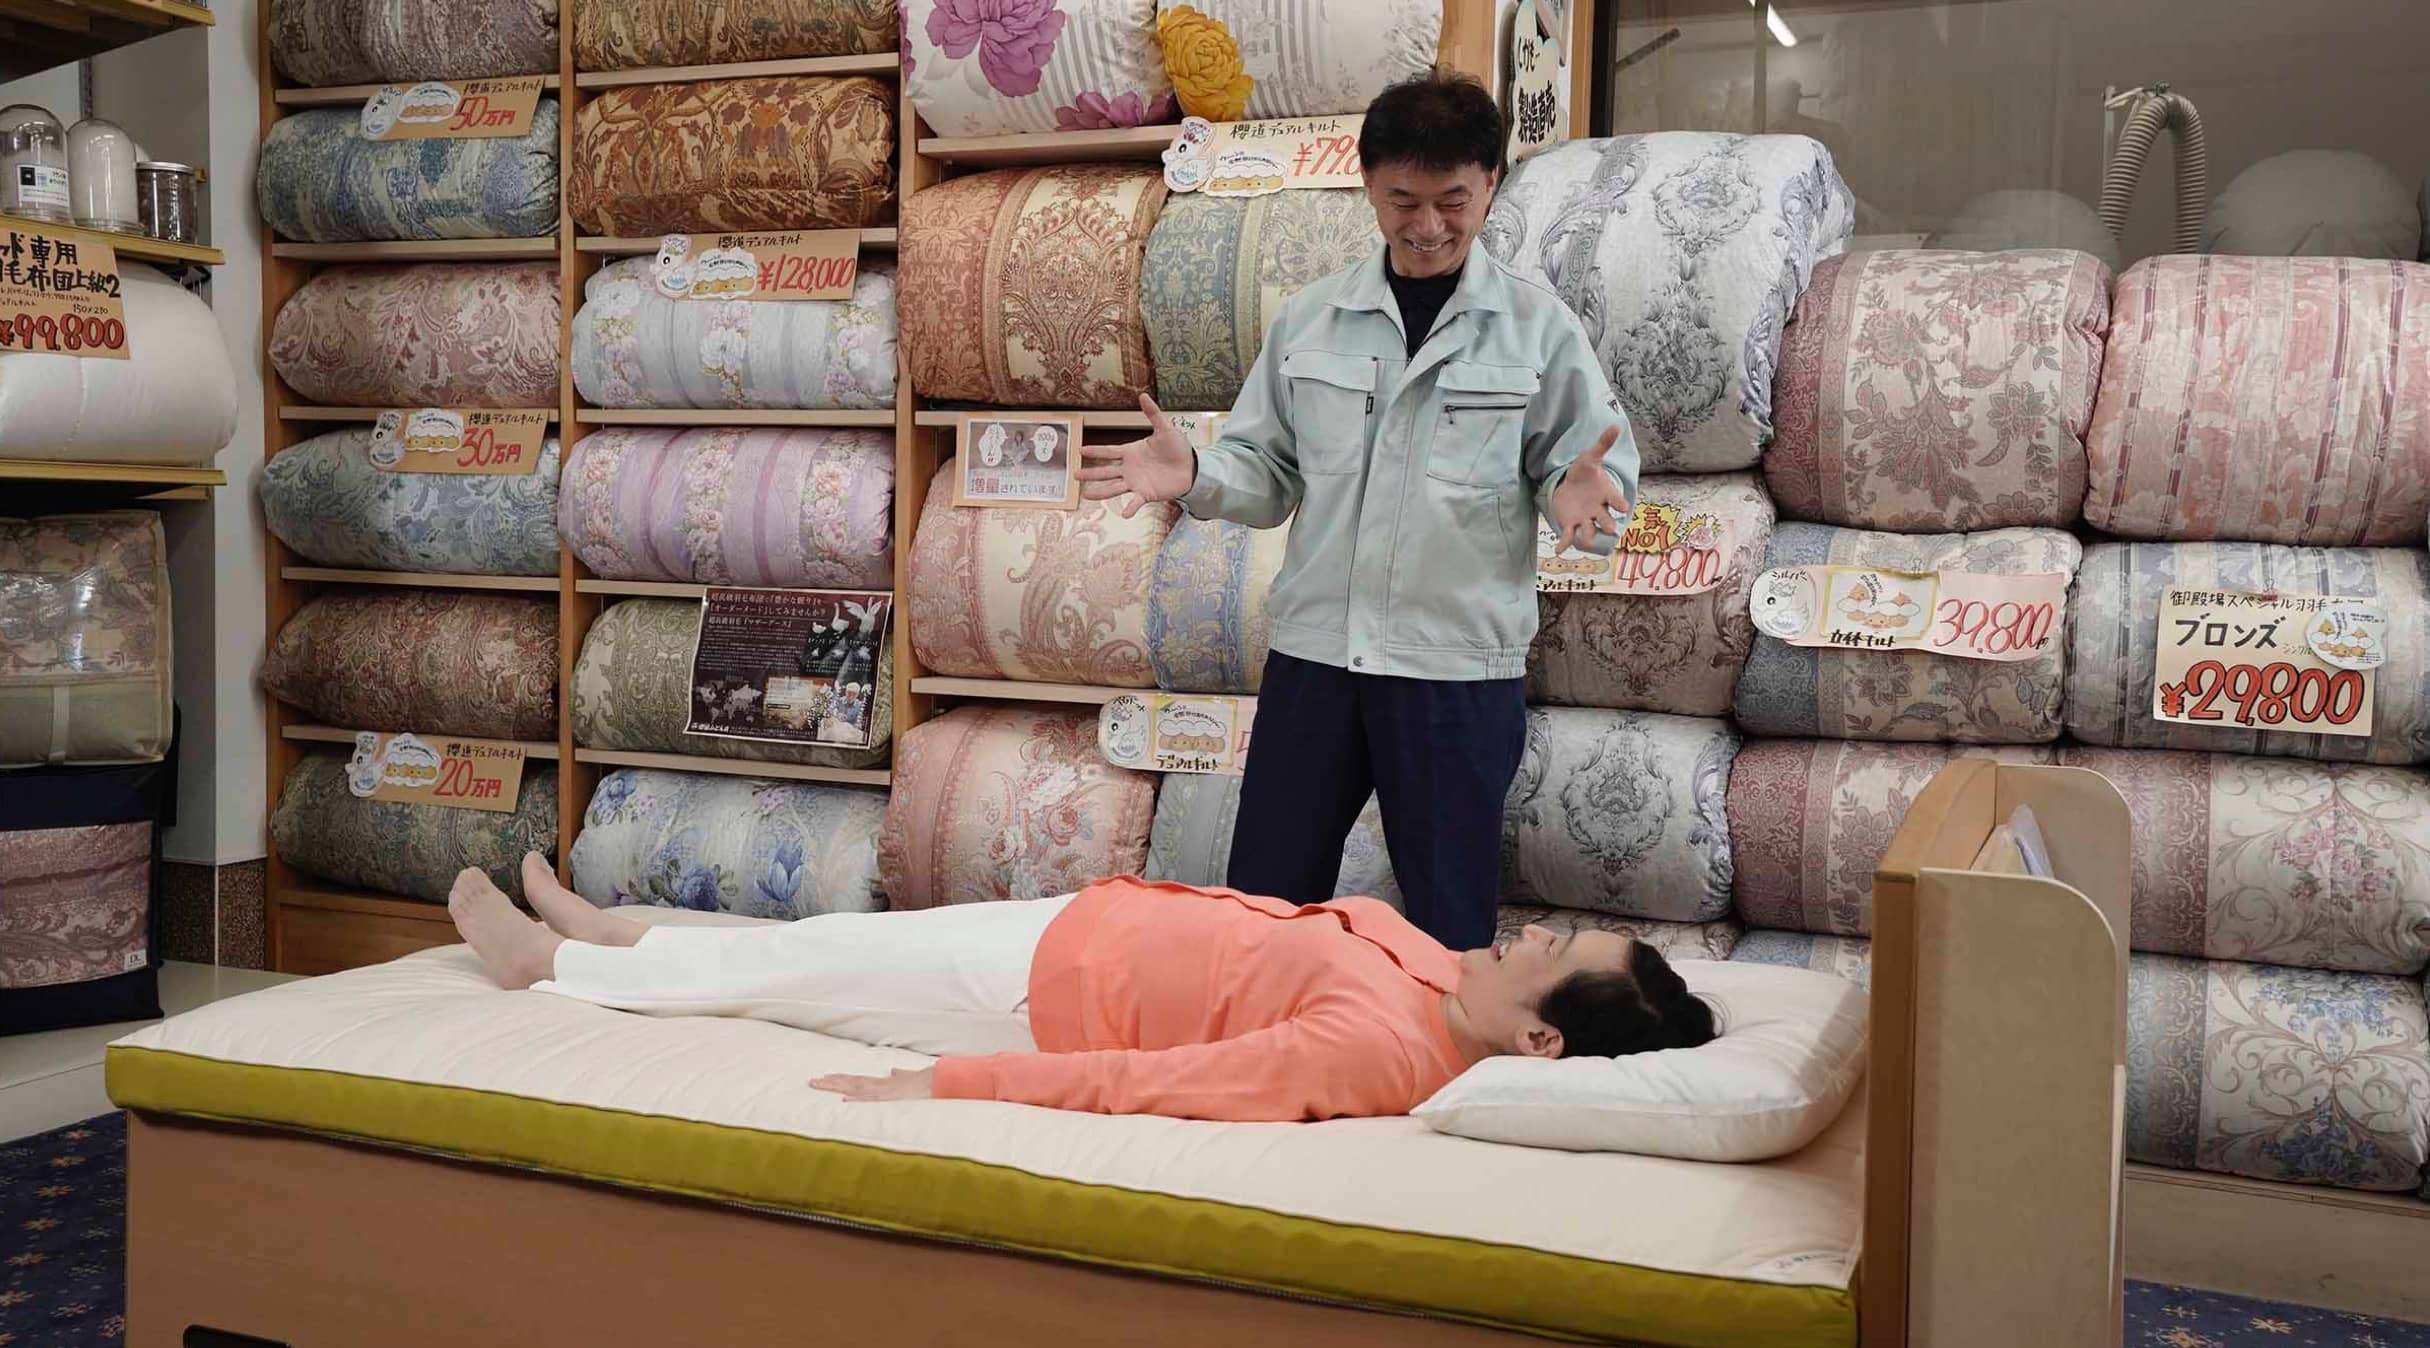 櫻道ふとん店で腰いい寝リッチ温泉羽毛マットレスを体験している女性